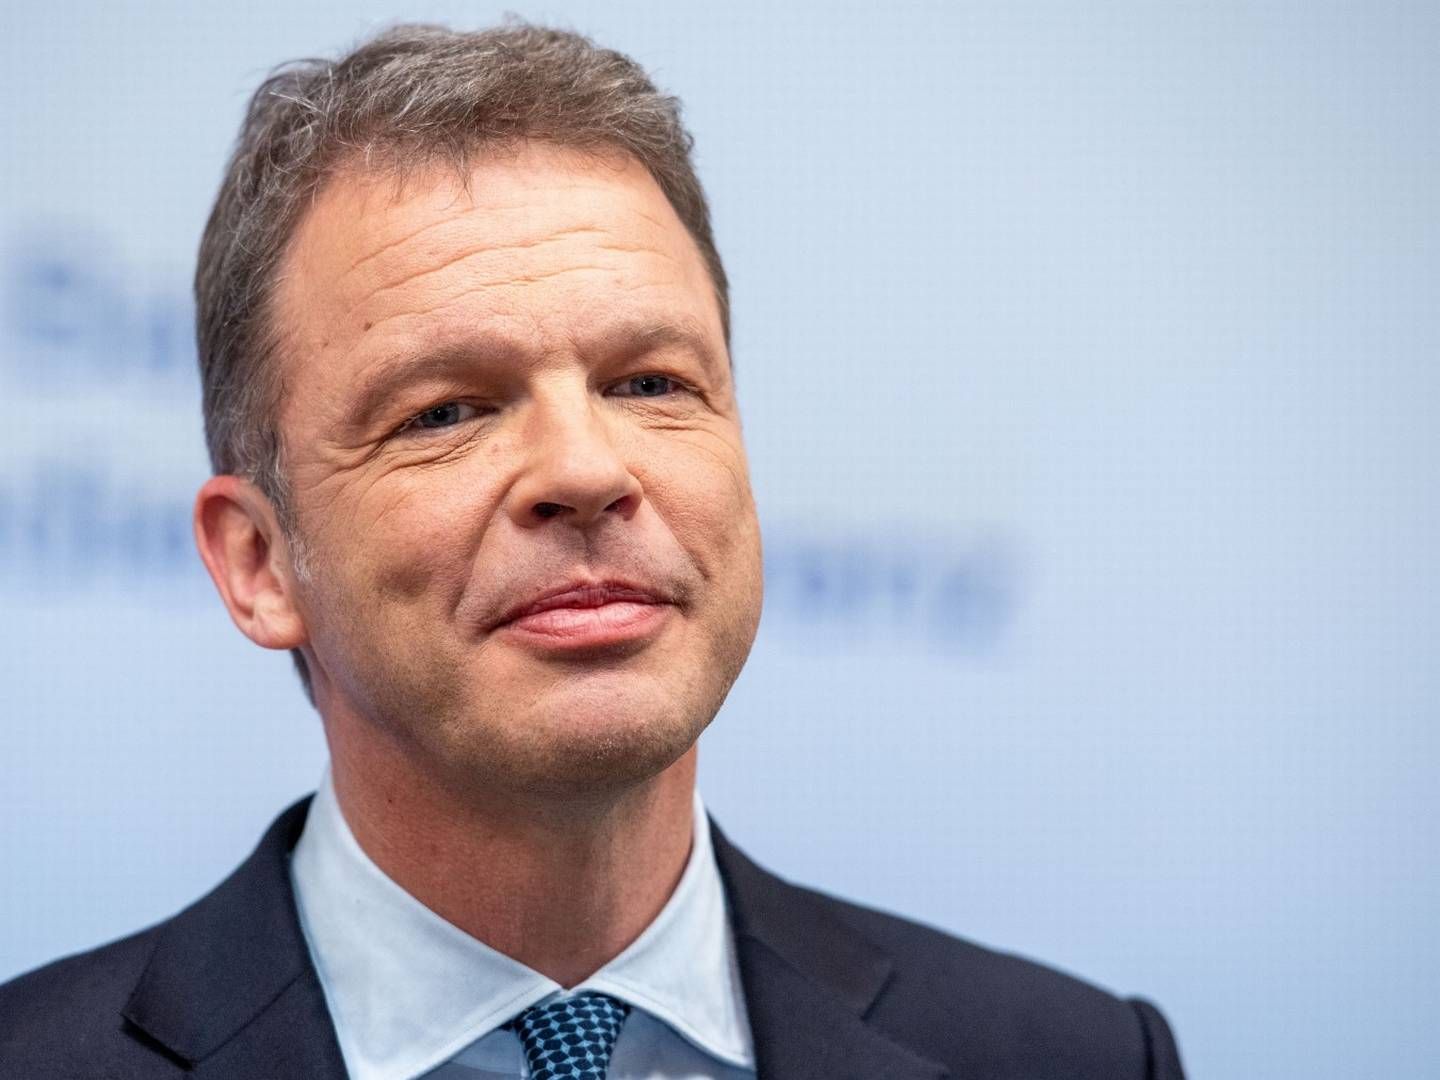 Christian Sewing, Vorstandsvorsitzender der Deutschen Bank | Foto: picture alliance / SvenSimon | Elmar Kremser/SVEN SIMON